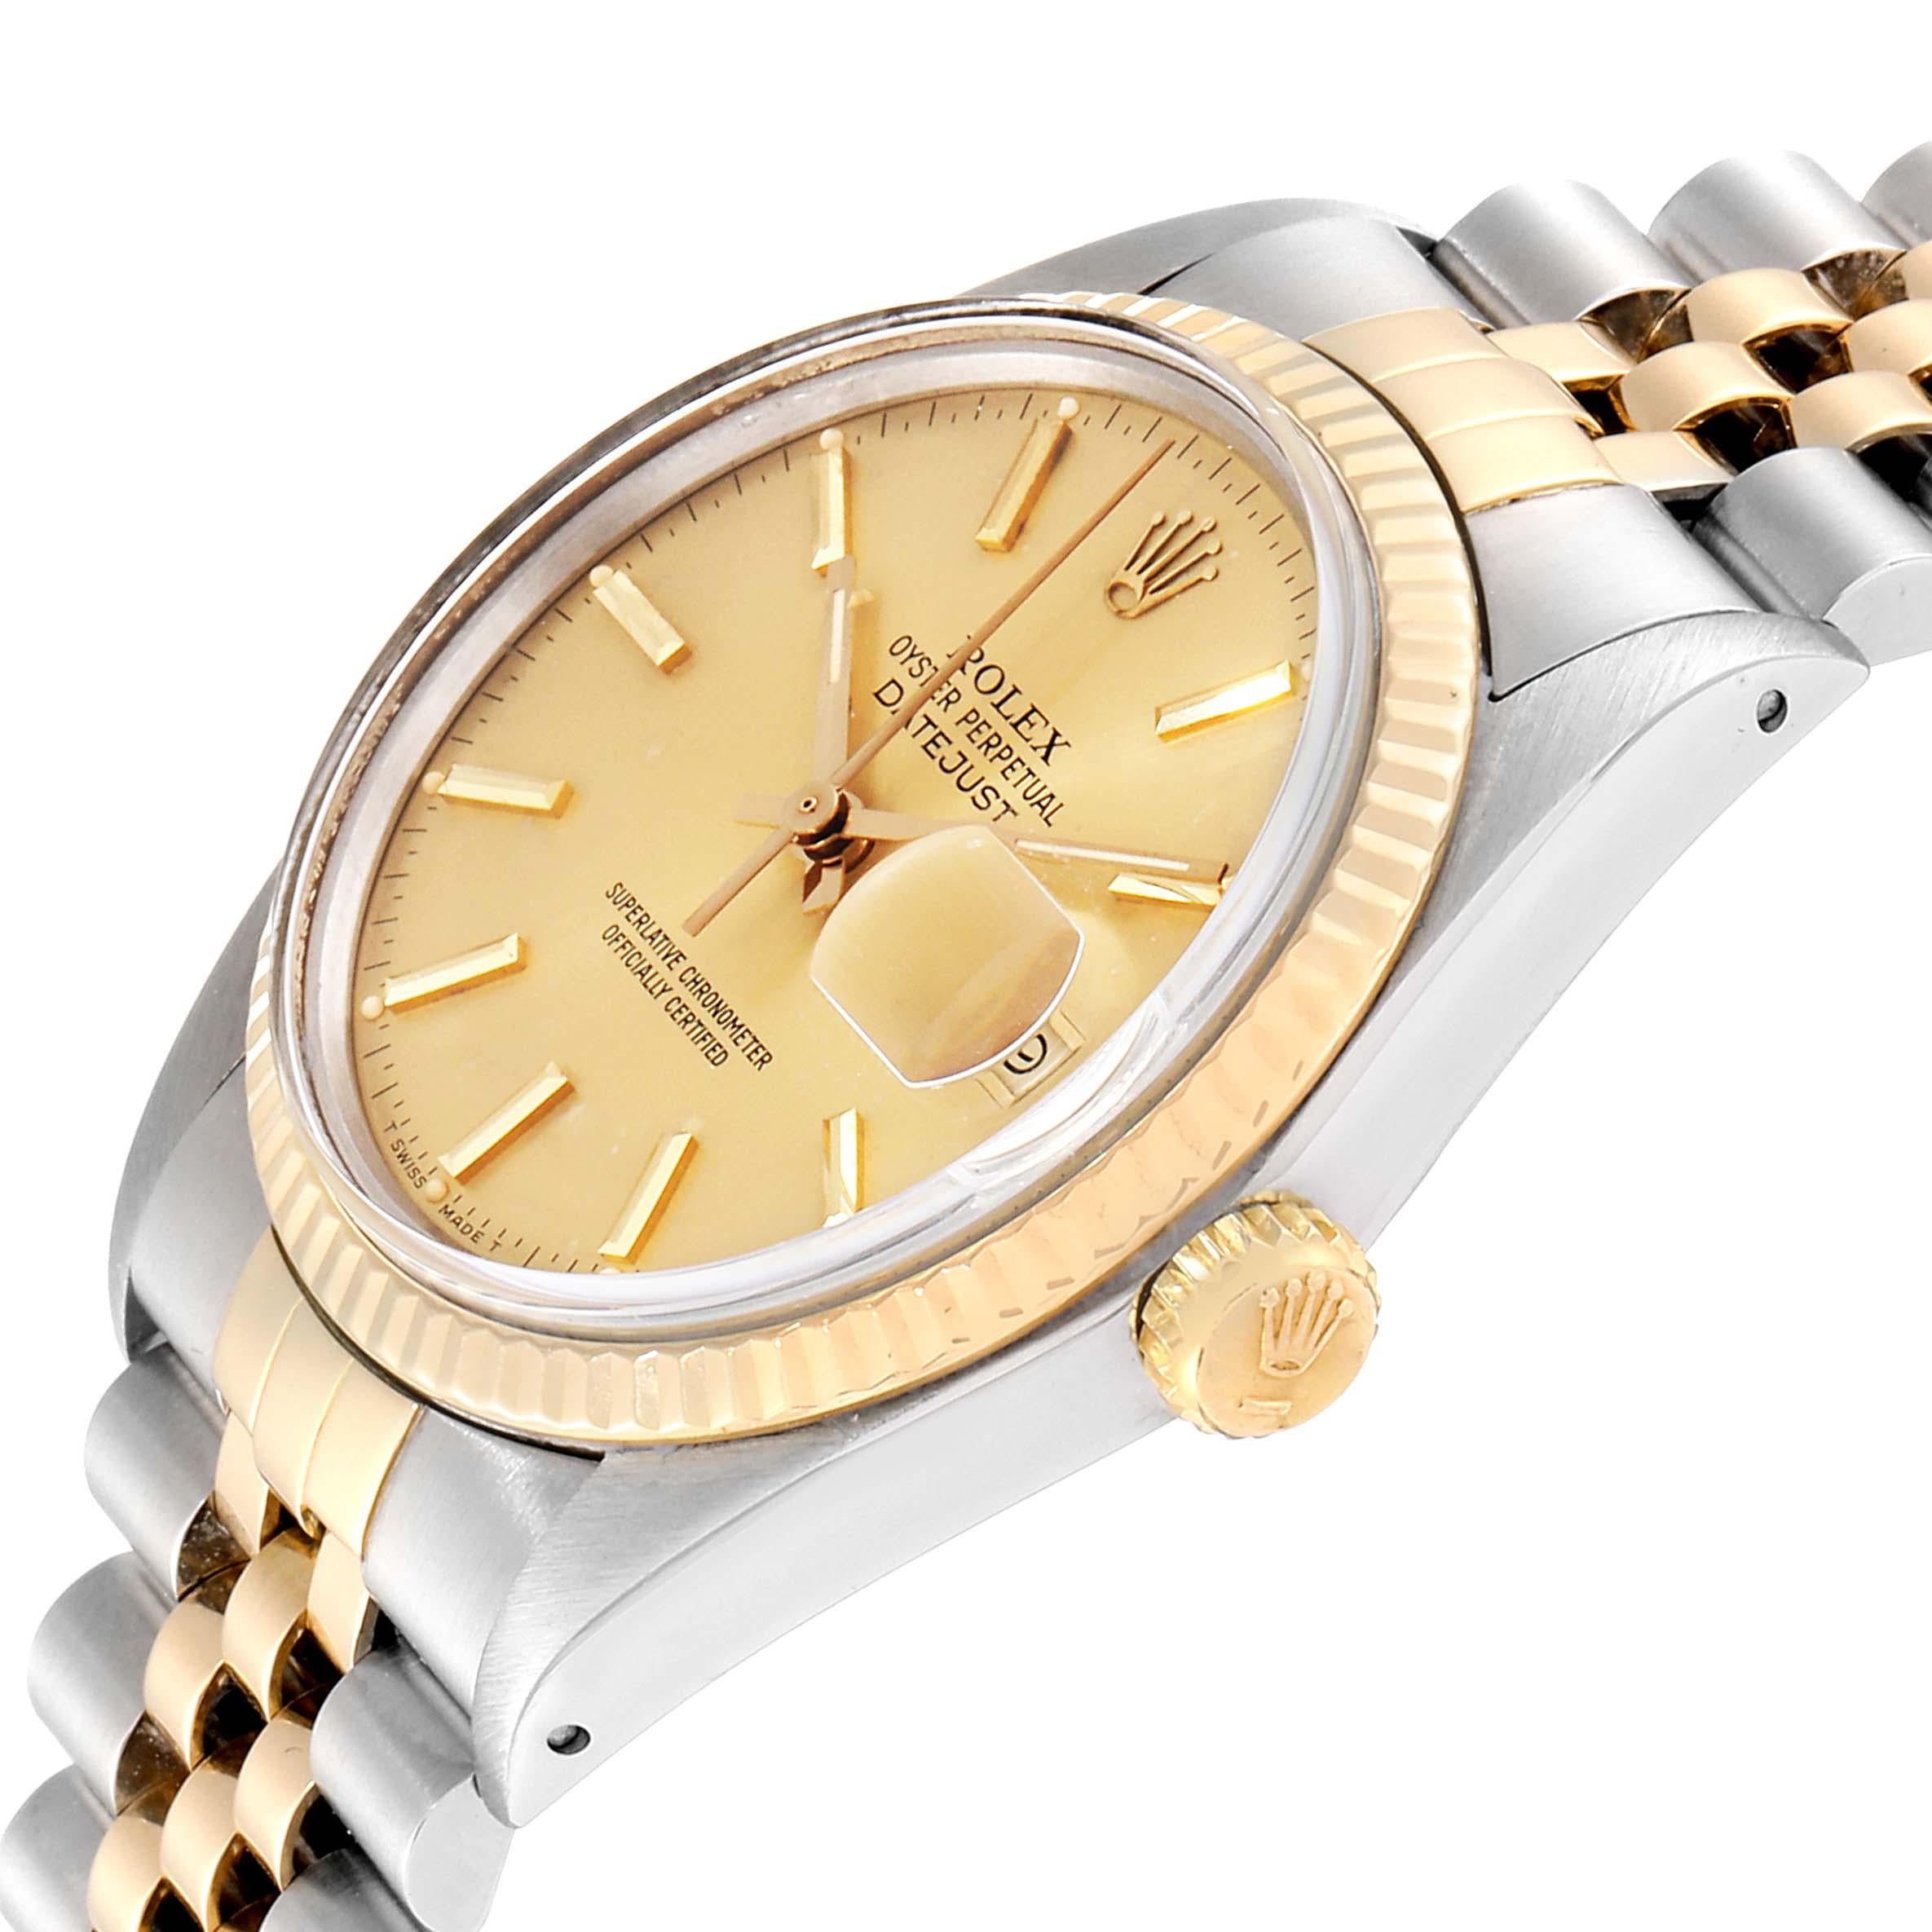 Rolex Datejust 36 Steel Yellow Gold Vintage Men's Watch 16013 2